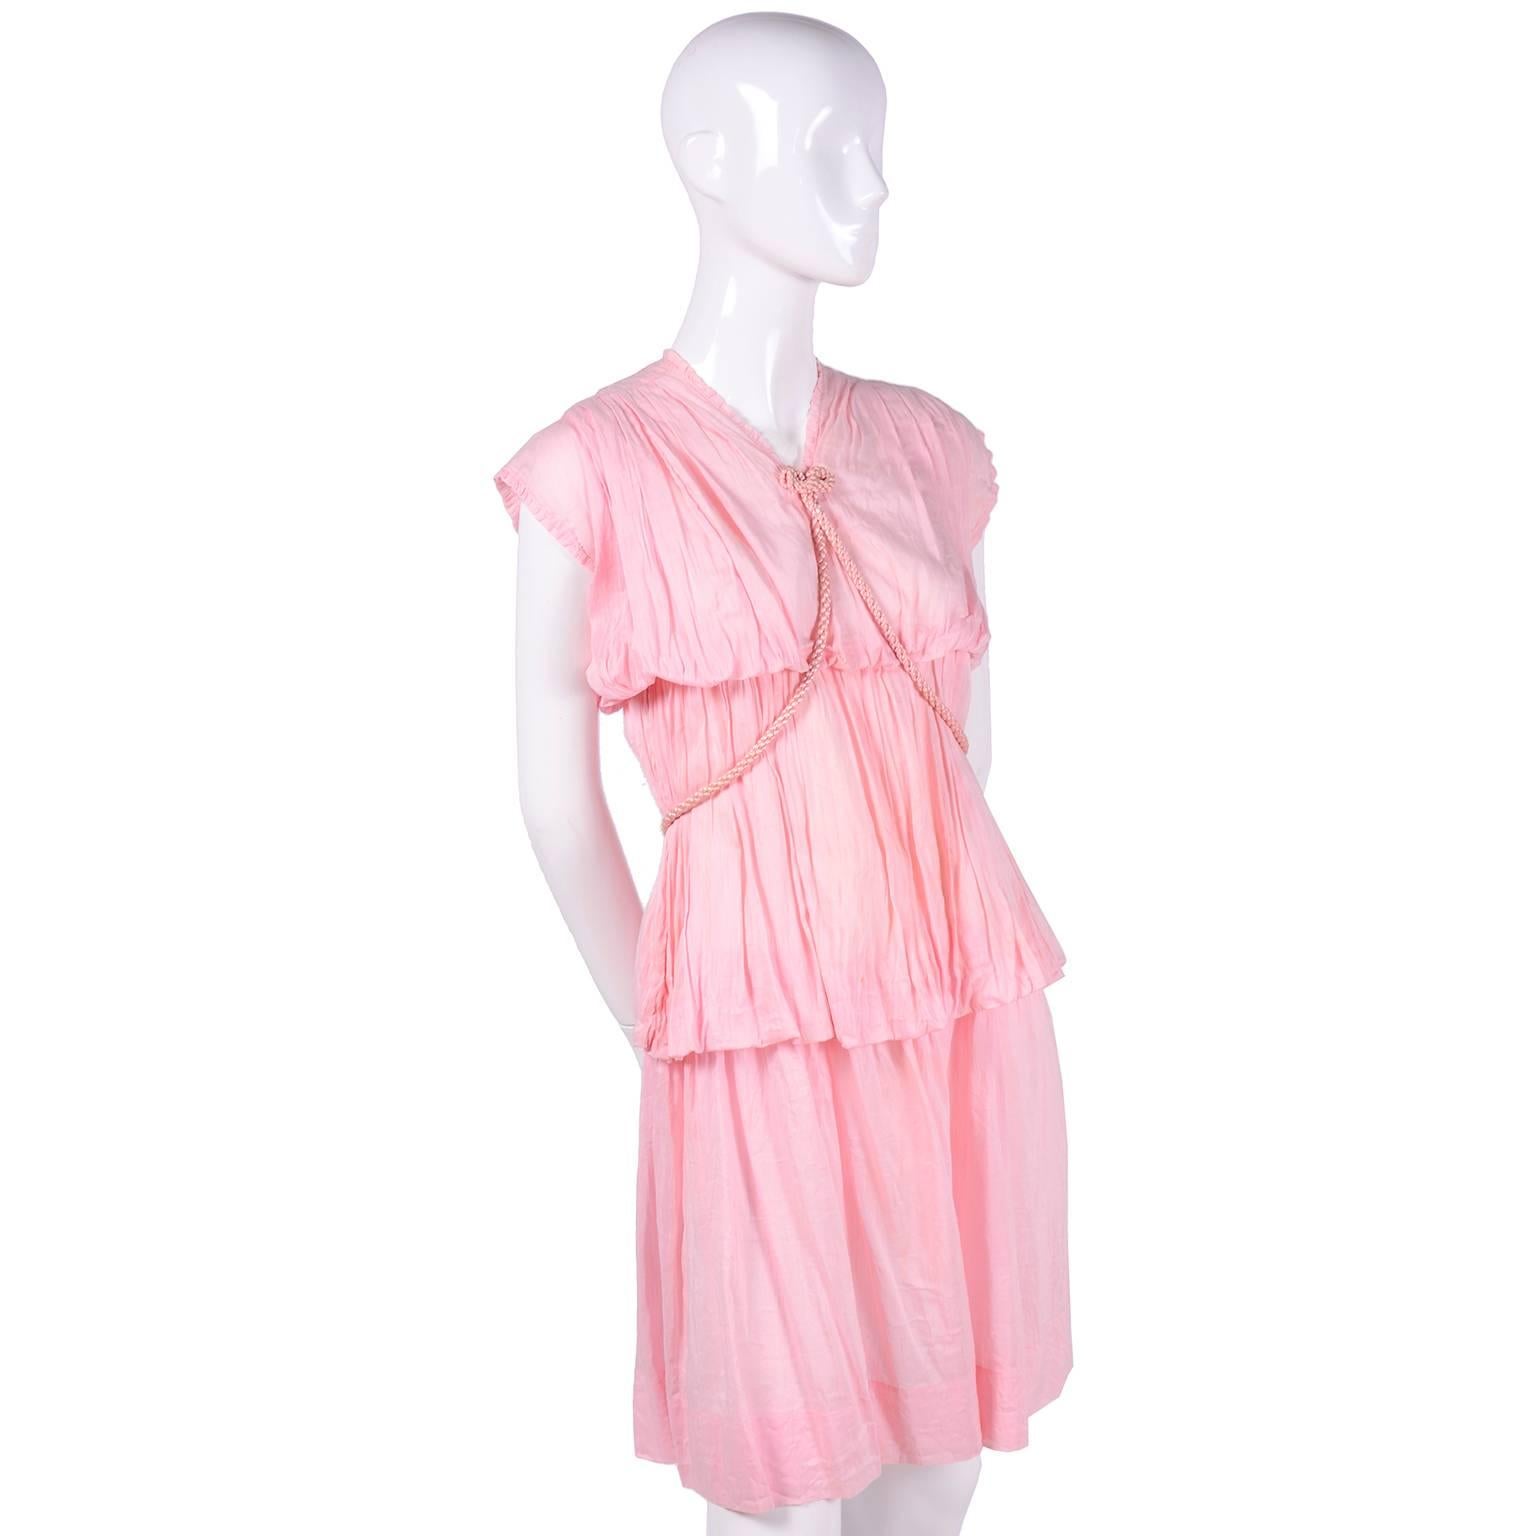 Dies ist ein absolut schönes Vintage-Kleid aus den 1920er Jahren. Das Kleid  ist aus einem rosa, ultrafeinen Baumwoll-Voile mit leicht gerafftem Stoff und einem geflochtenen rosa Satin-Seilgürtel. Der Gürtel kann im griechischen Stil oder auf